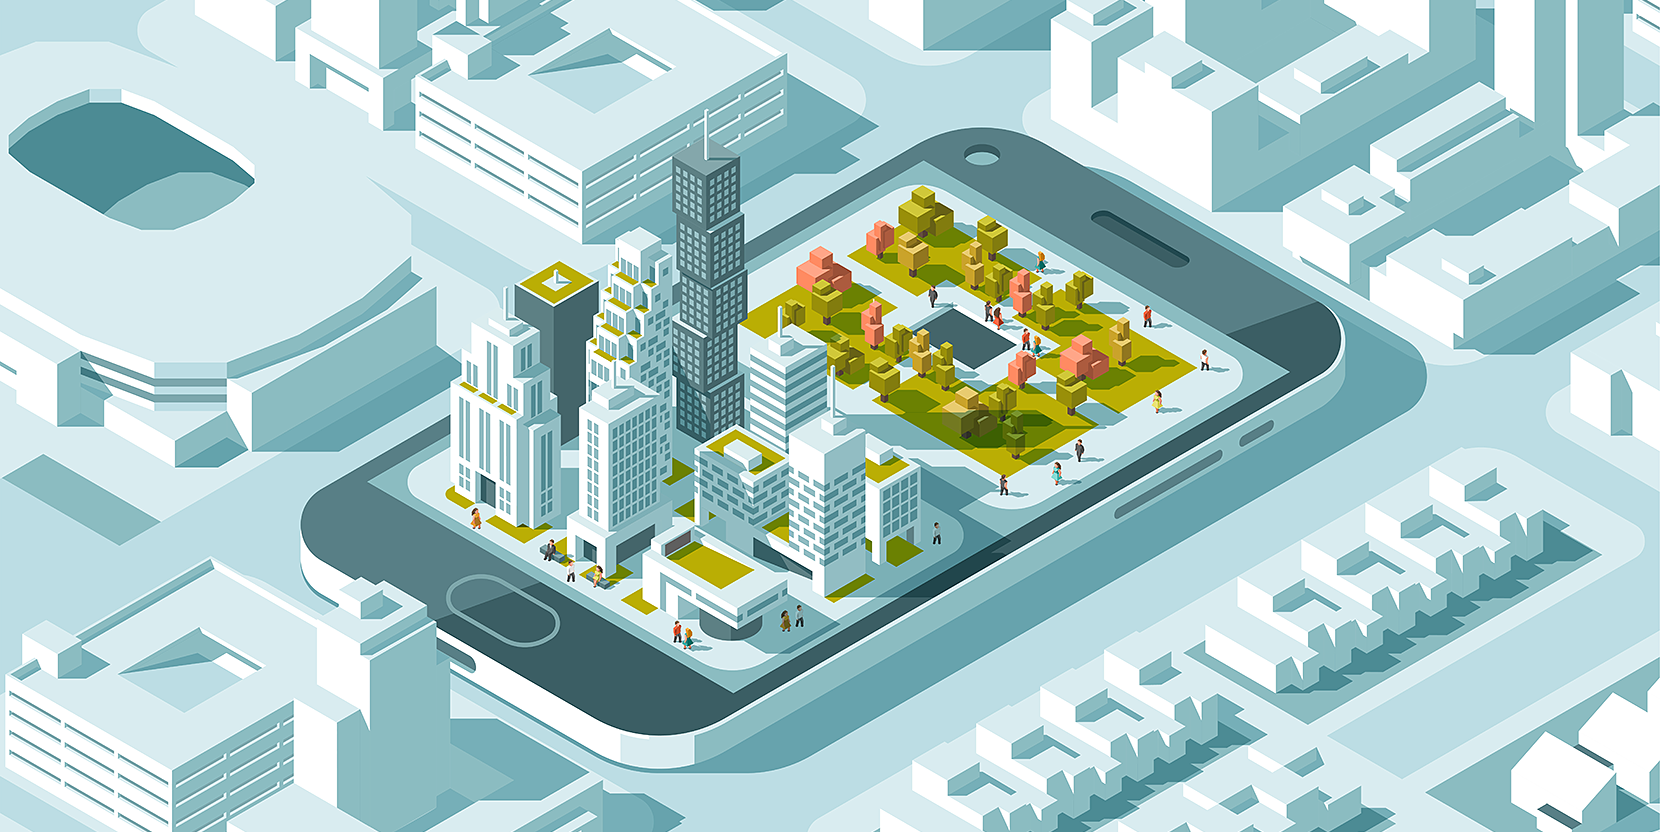 市民と企業がゲーム感覚でまちの課題を解決するスマートシティアプリの実証実験